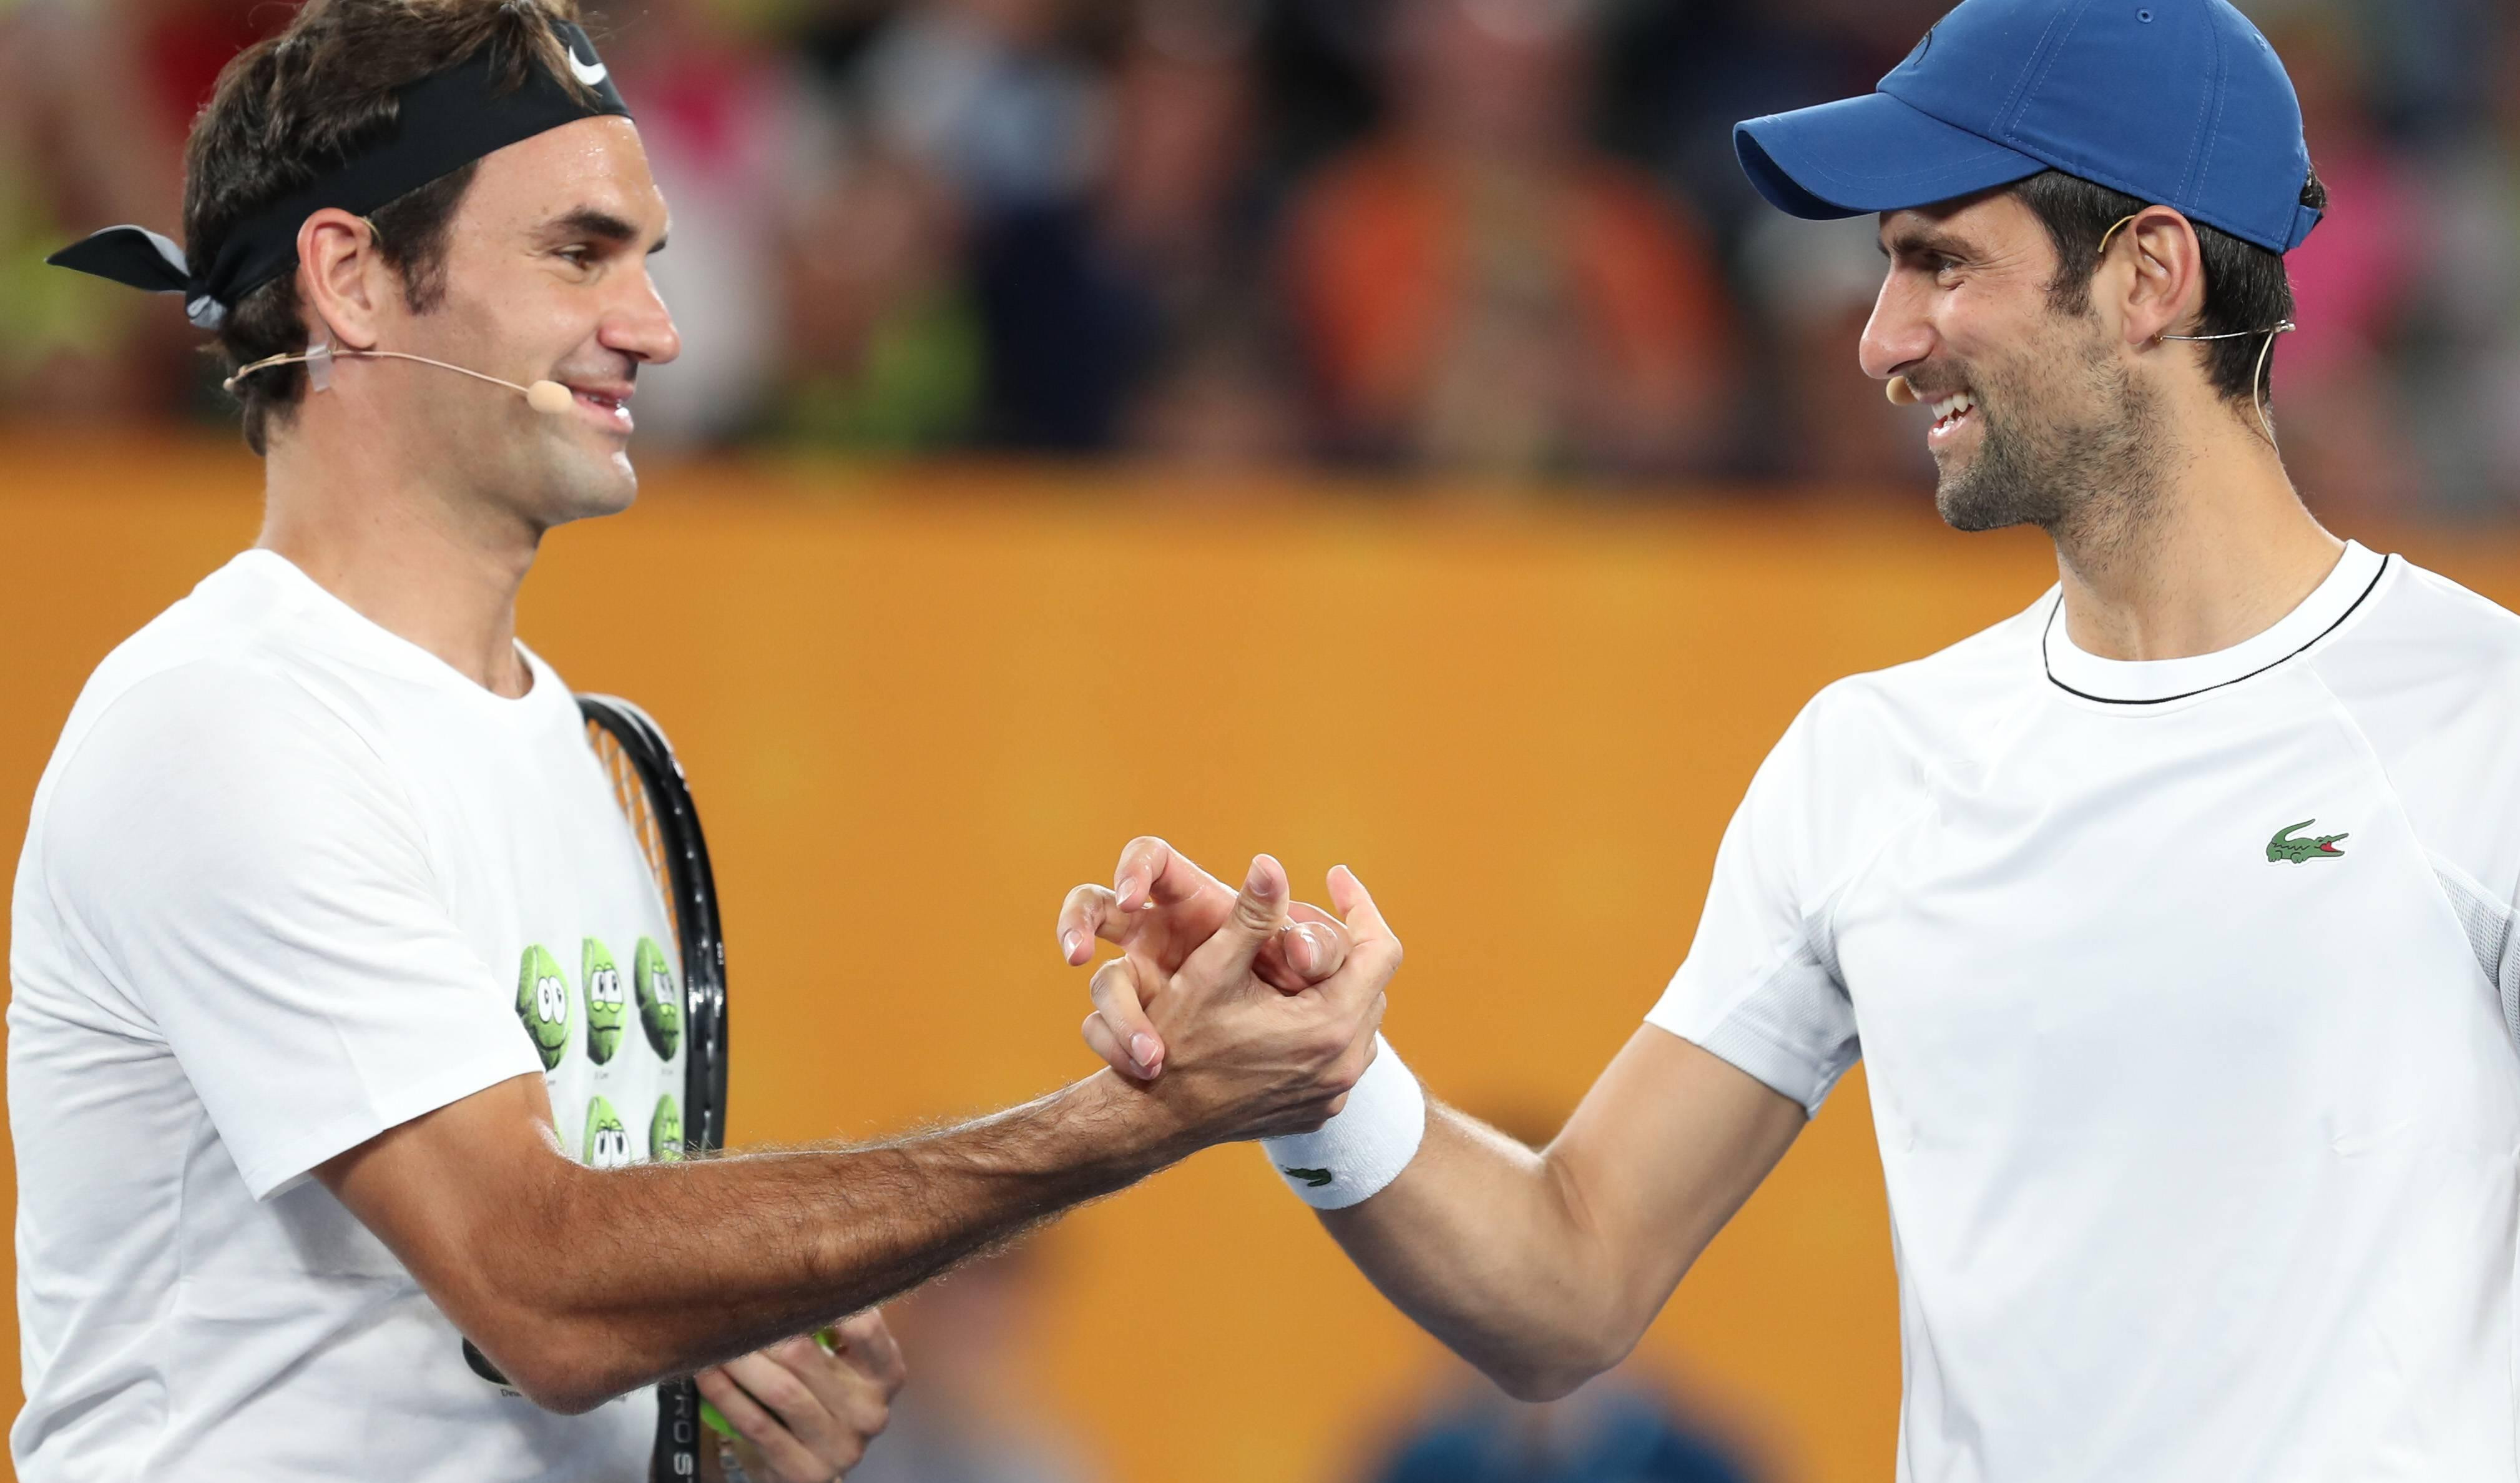 (FOTO) VELIKI NOVAK! Đoković čestitao rivalu Federeru povratak na tron!